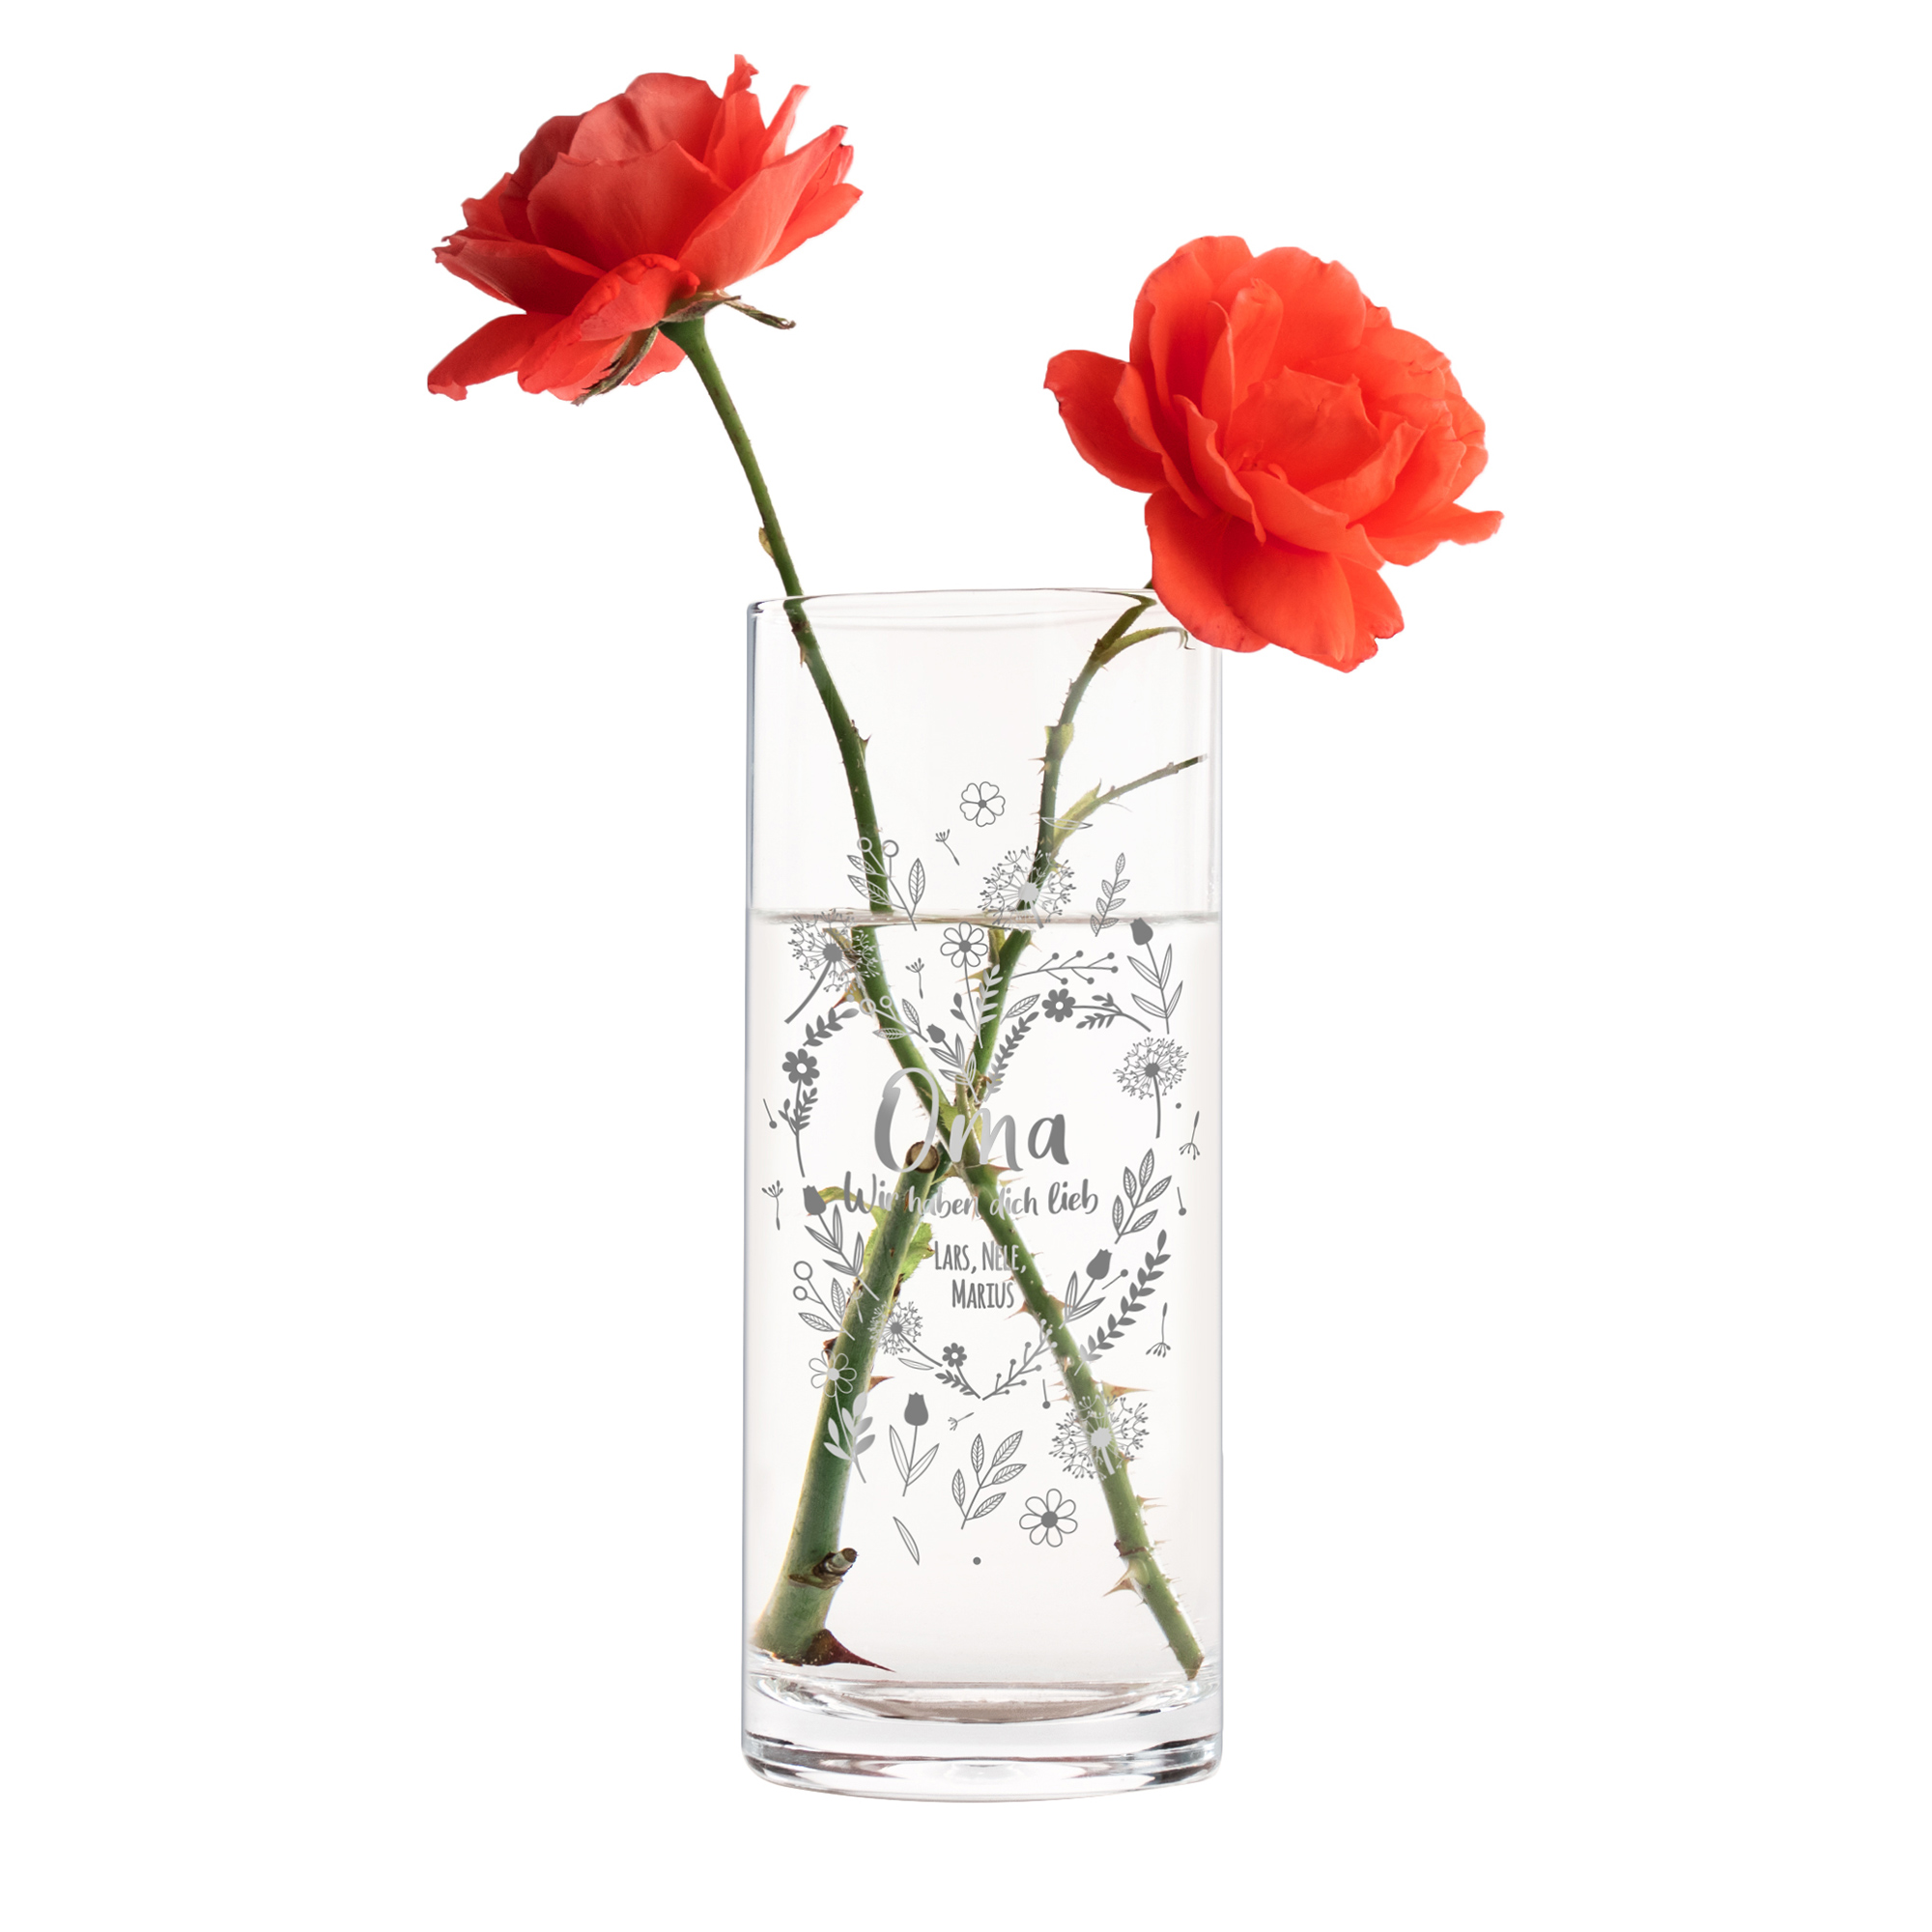 Gravierte Blumenvase aus Glas für Oma, runde Vase mit Gravur als Geschenk für Großmutter, Deko Glasvase mit persönlicher Botschaft für Omi